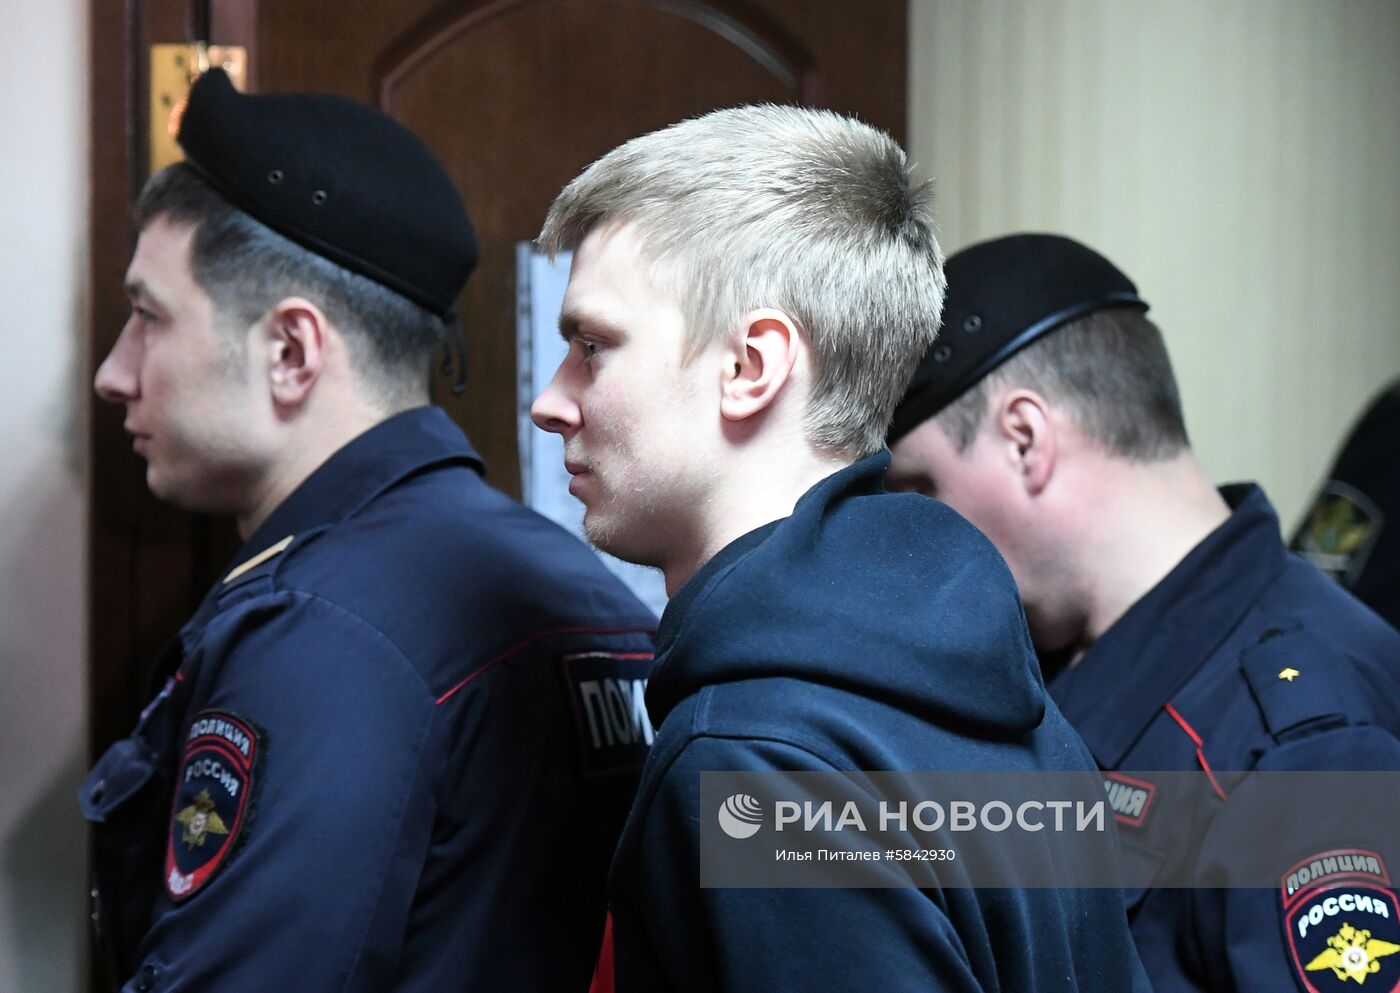 Рассмотрение по существу уголовного дела в отношении А. Кокорина и П. Мамаева продолжается